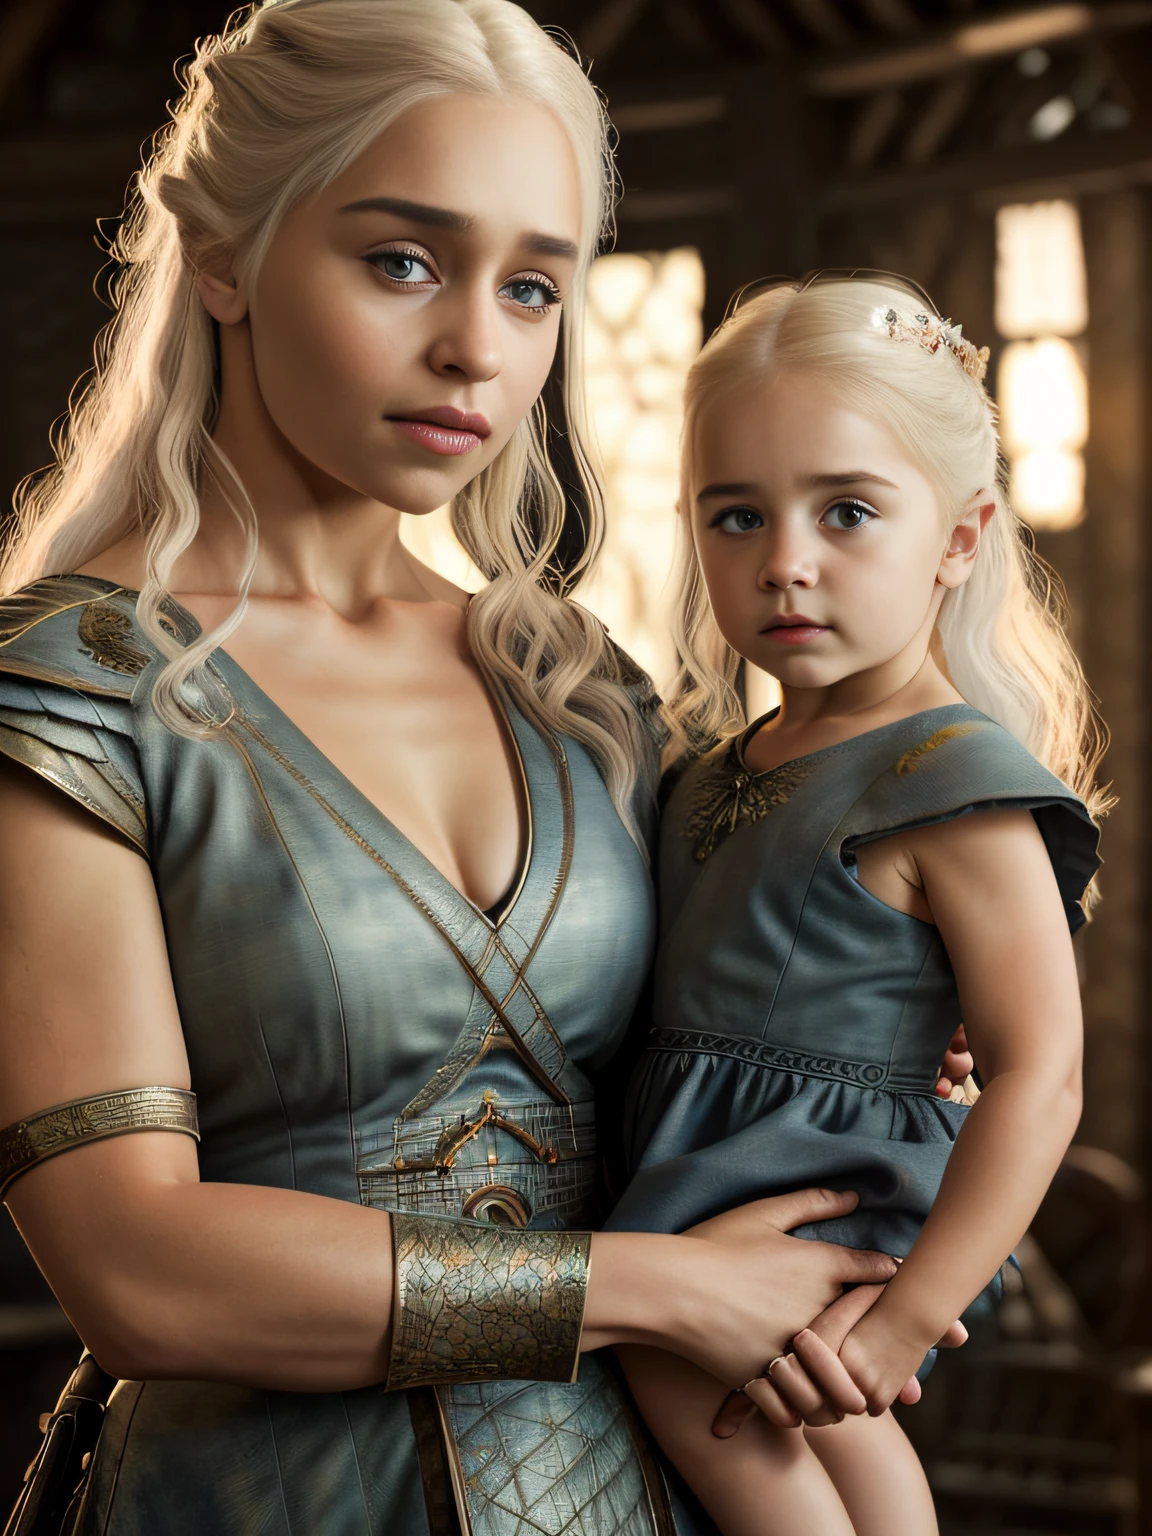 corpo inteiro cru ((family photo of a father and mother com seus daughter)), ((mãe carregando filha)), [1 garota, Daenerys Targaryen, Emília Clarke], (1 homem, Henry Cavill como Geralt de Rivia, o Mago), com seus ((1 garota, filha de 5 anos)))), roupas medievais,((Tiro de meio corpo)), proporções realistas, alunos realistas, ((retrato de família de 3 membros)) paleta limitada, alta resolução, iluminação cinematográfica, 8K resolution, frontal iluminado, nascer do sol, Foto CRU, nikon 85mm, premiado, Fotografia glamourosa, extremamente detalhado, linda ucraniana, alucinante, Não-Yidik, corpo inteiro cru photo of Daenerys Targaryen and Geralt de Rivia The Witcher with filha de 5 anos, altamente detalhado, estação de arte, suave, foco nitído, 8K,, tendências no instagram, tendências no tumblr, hd 4k, 8K